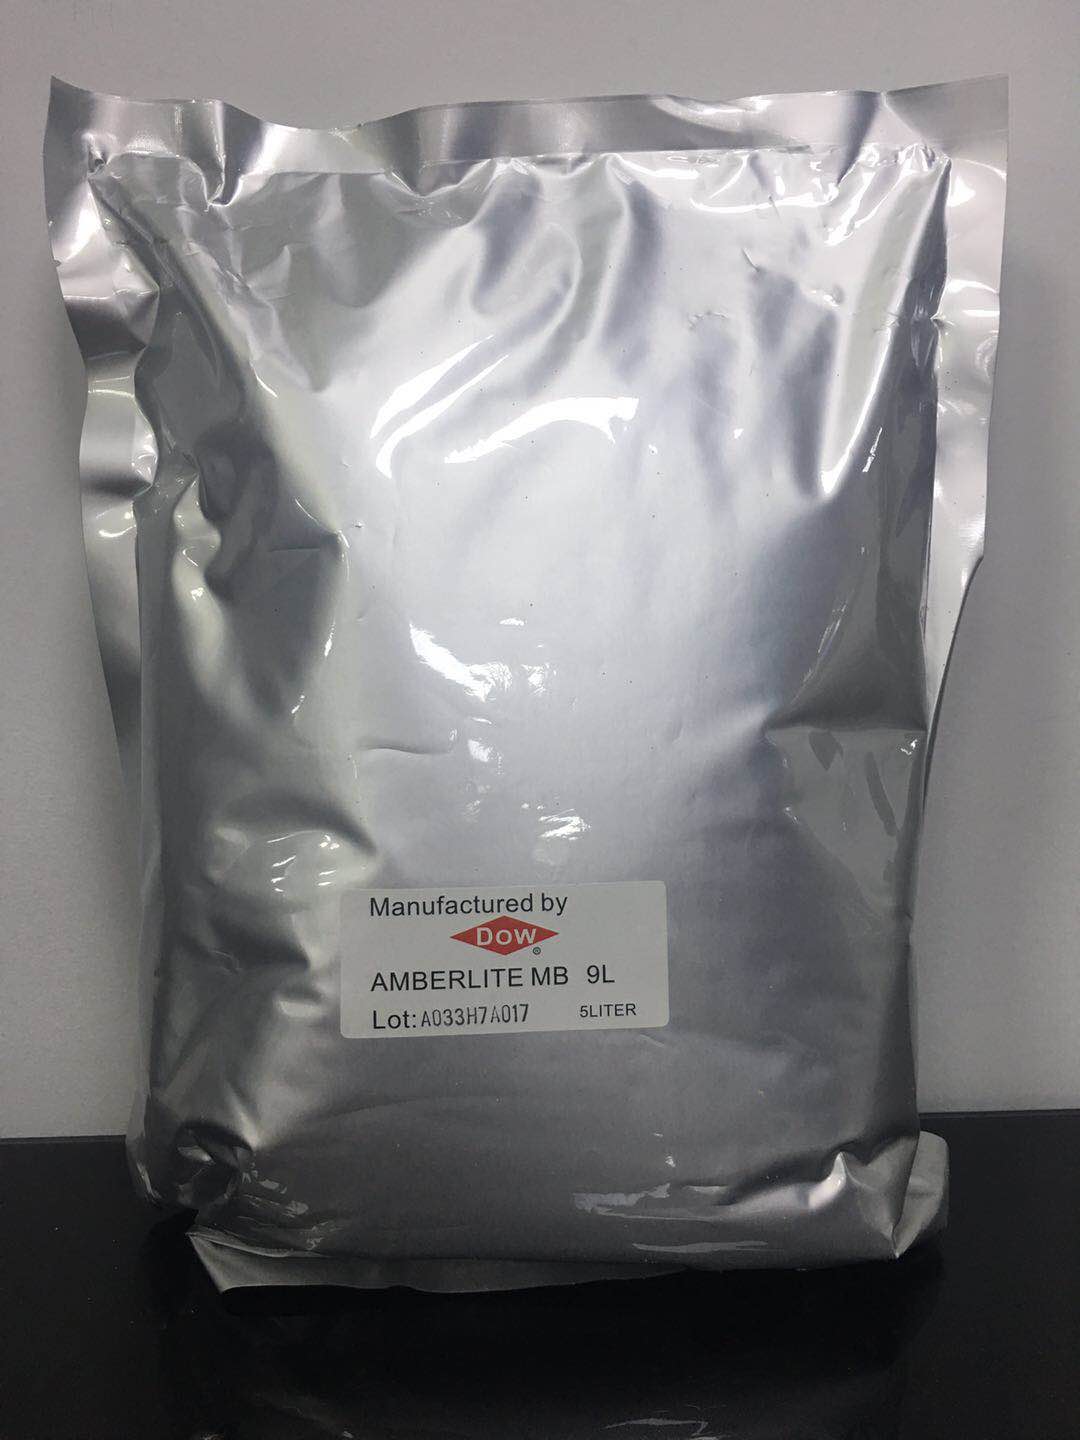 美國羅門哈斯混床樹脂AMBERLITE MB9L慢走絲機床專用樹脂